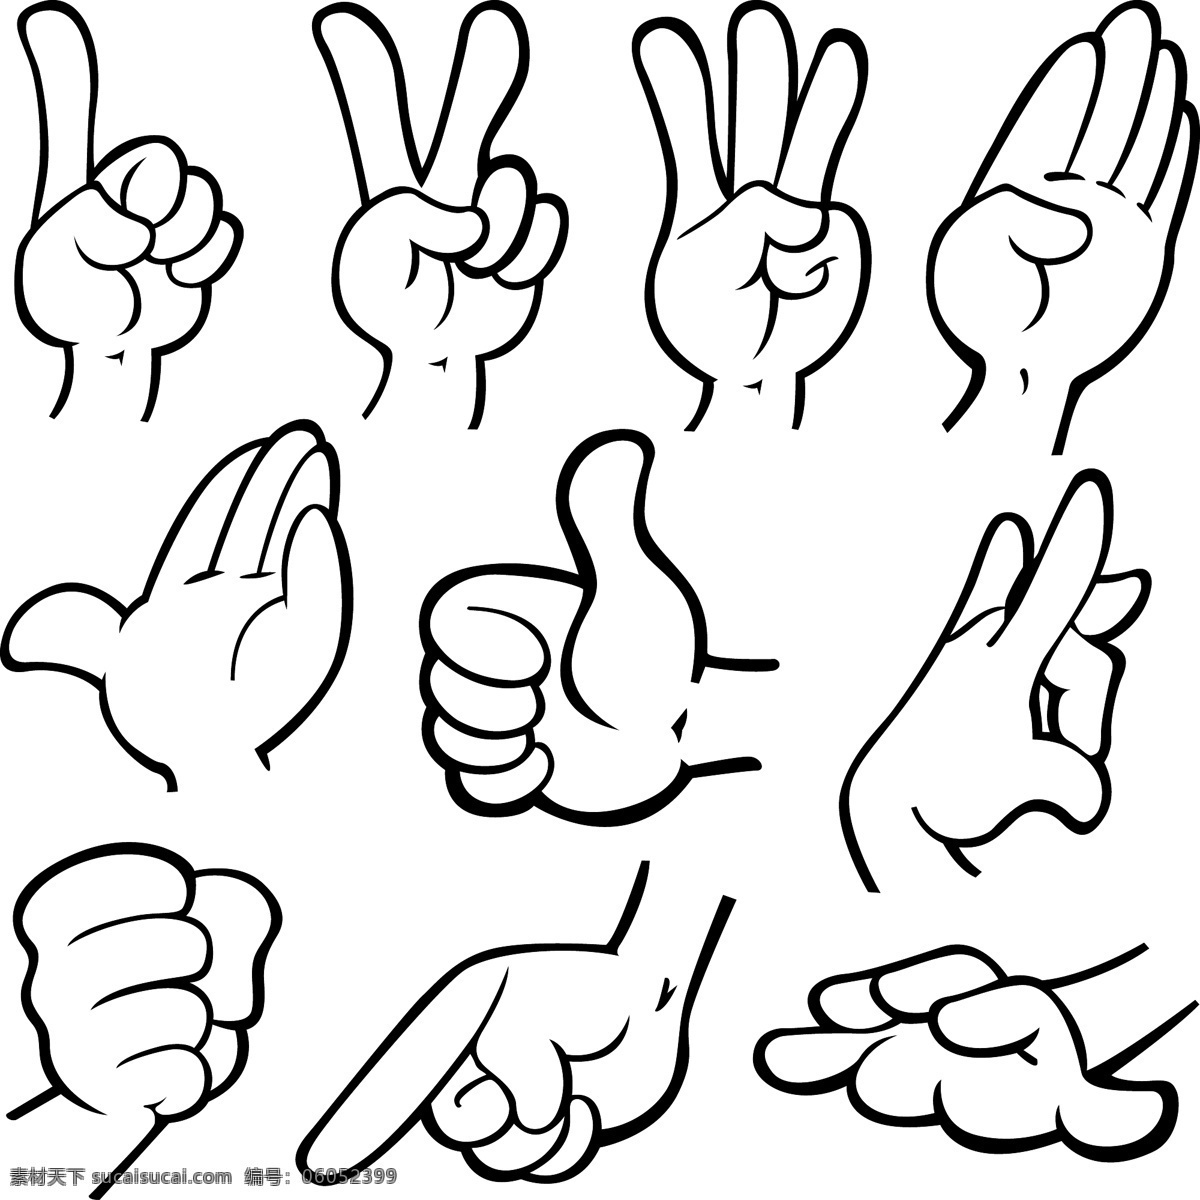 手势 手型 手部特写 手势喻意 手势创意 人物 手势合集 手势图片 手的表情 各种手势 动作 生活素材 平面素材